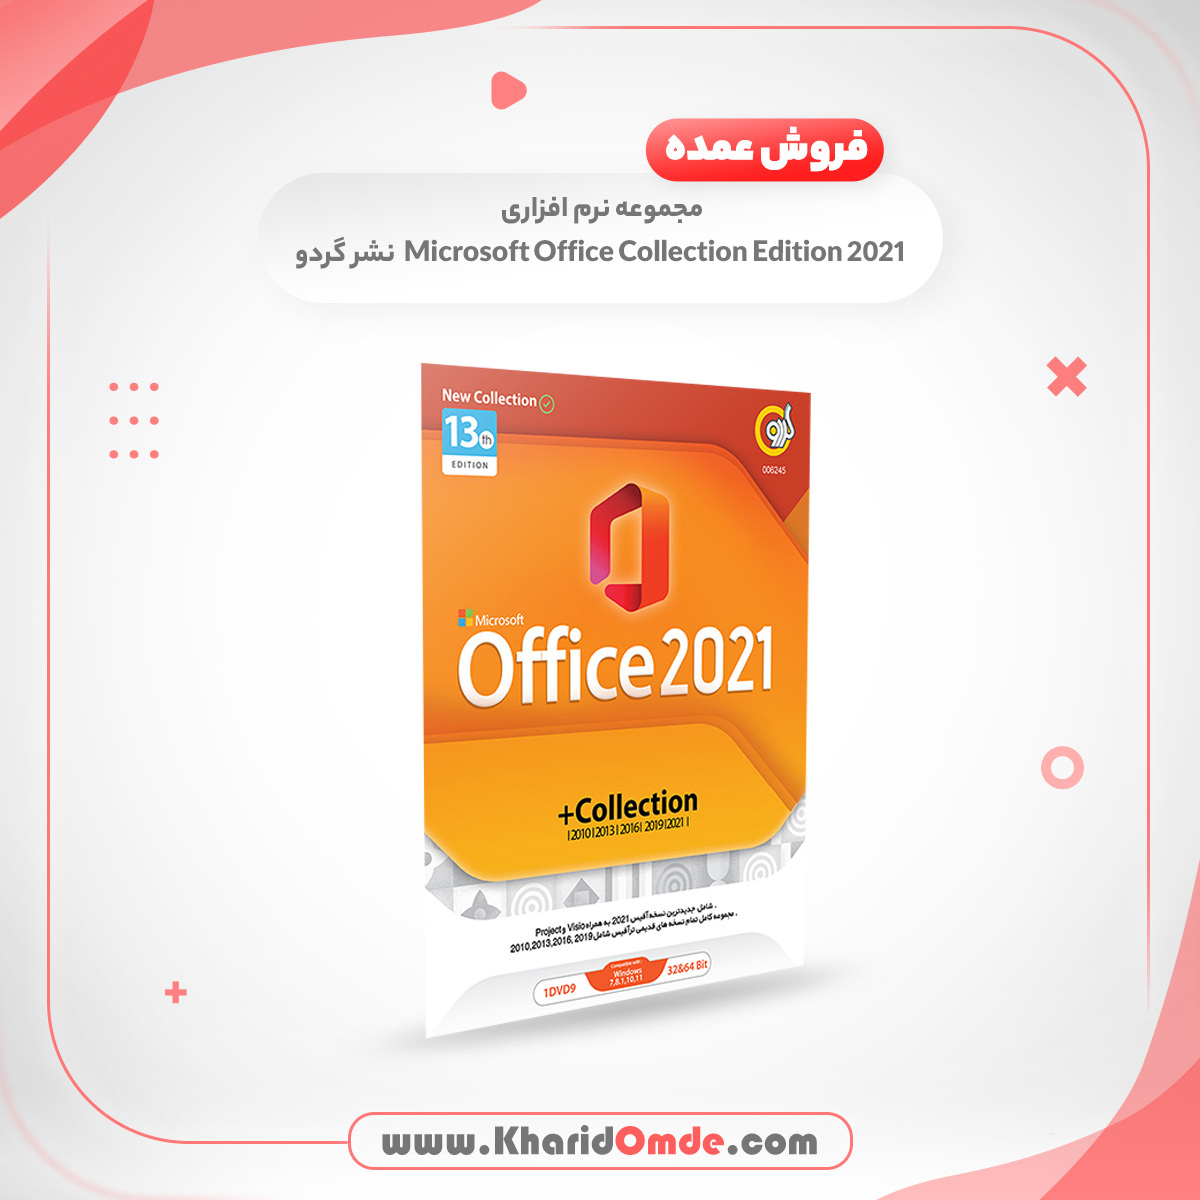 فروش عمده مجموعه نرم افزاری Microsoft Office Collection Edition 2021 نشر گردو